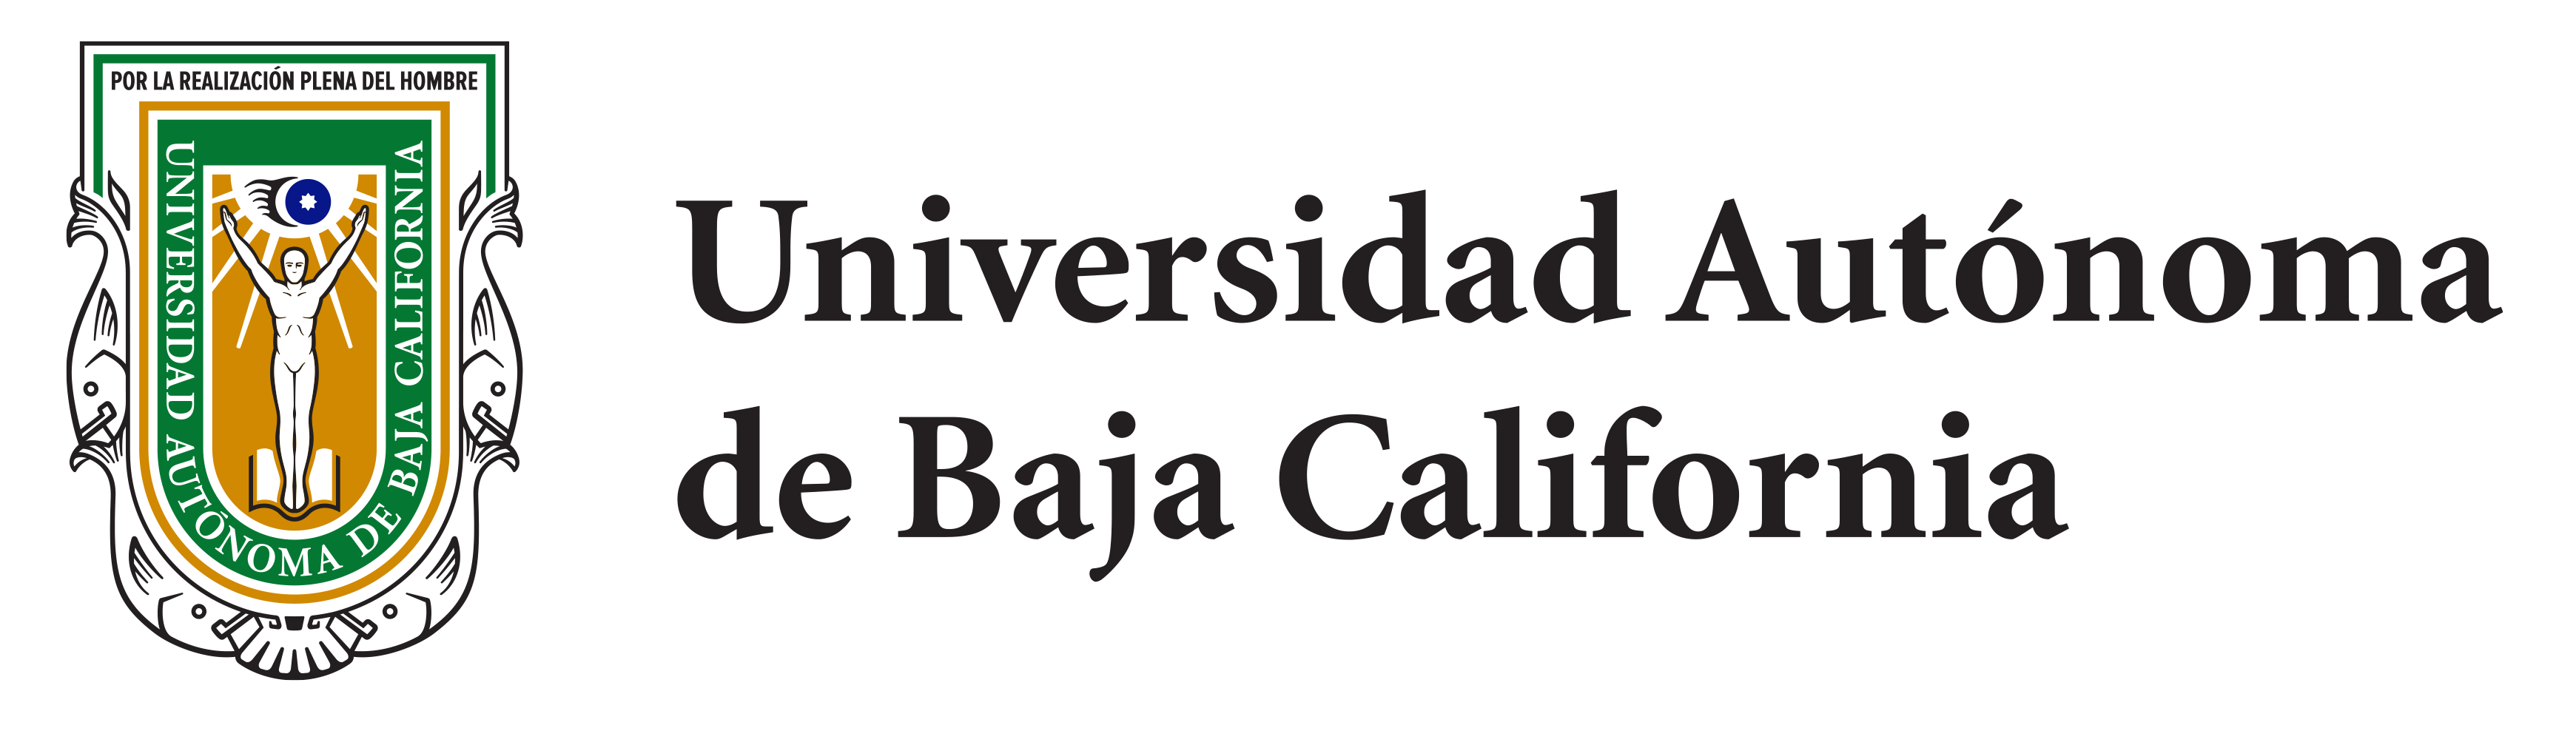 No Más  Universidad Autónoma de Baja California